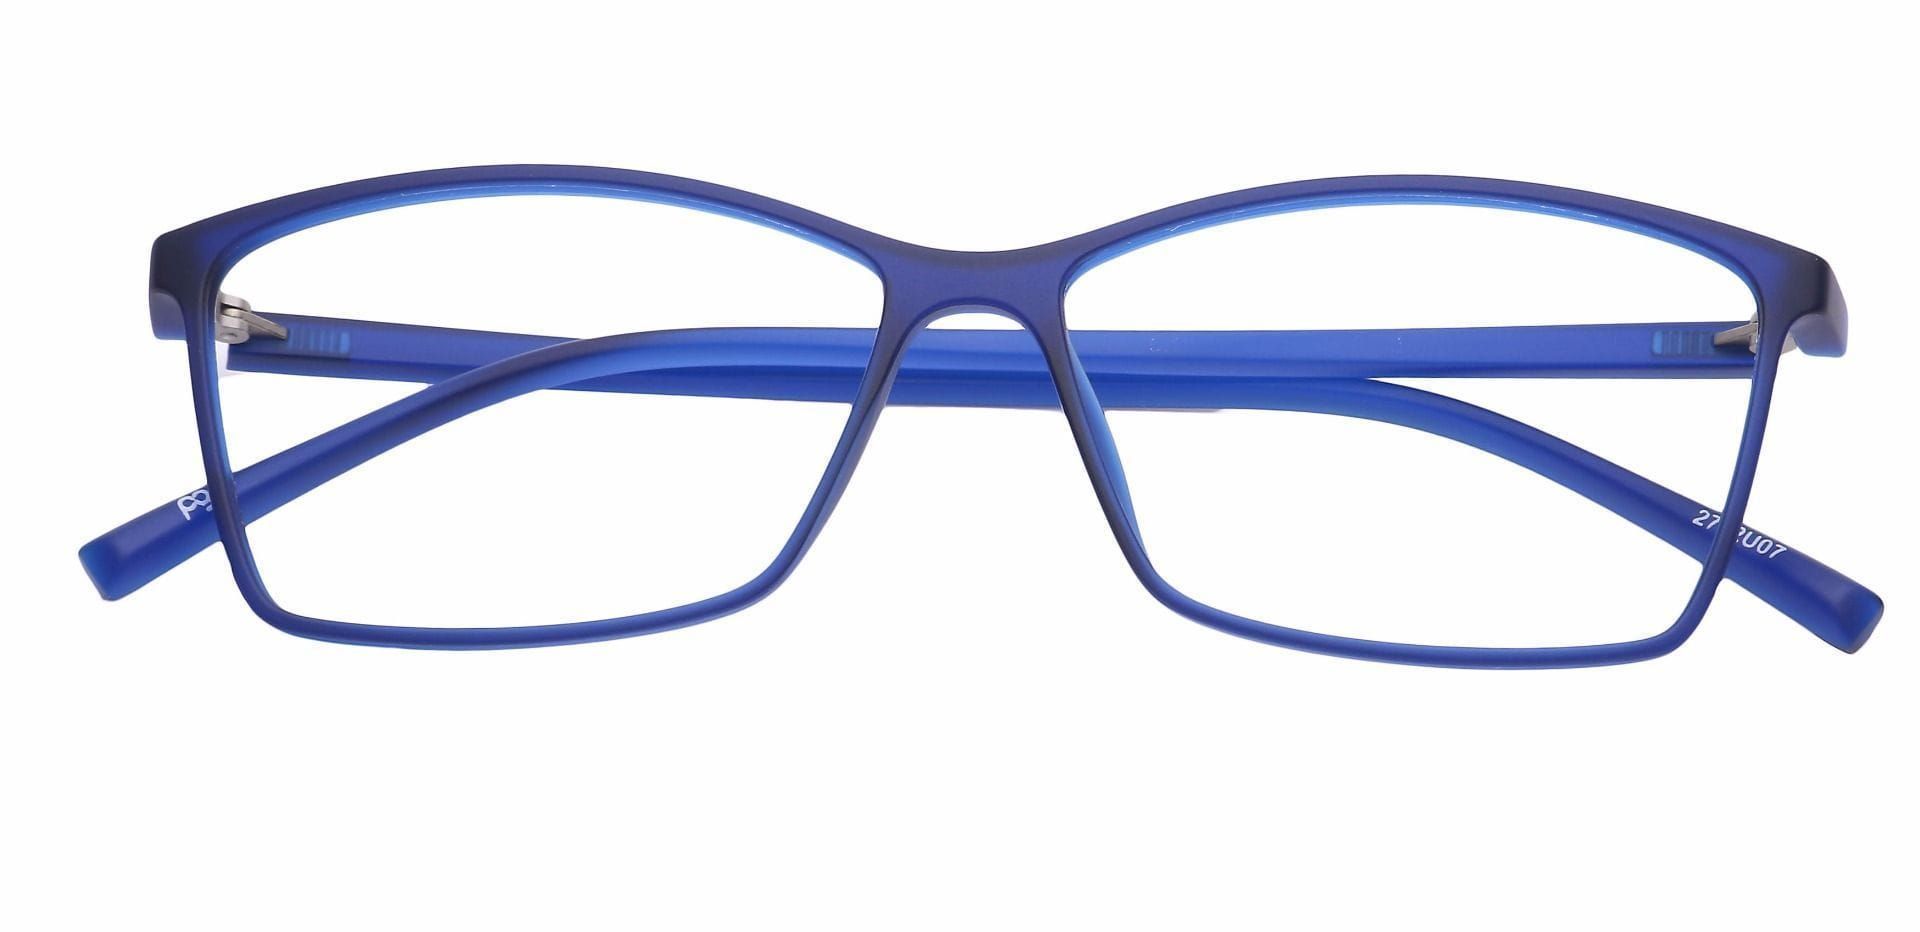 Align Rectangle Eyeglasses Frame - Blue